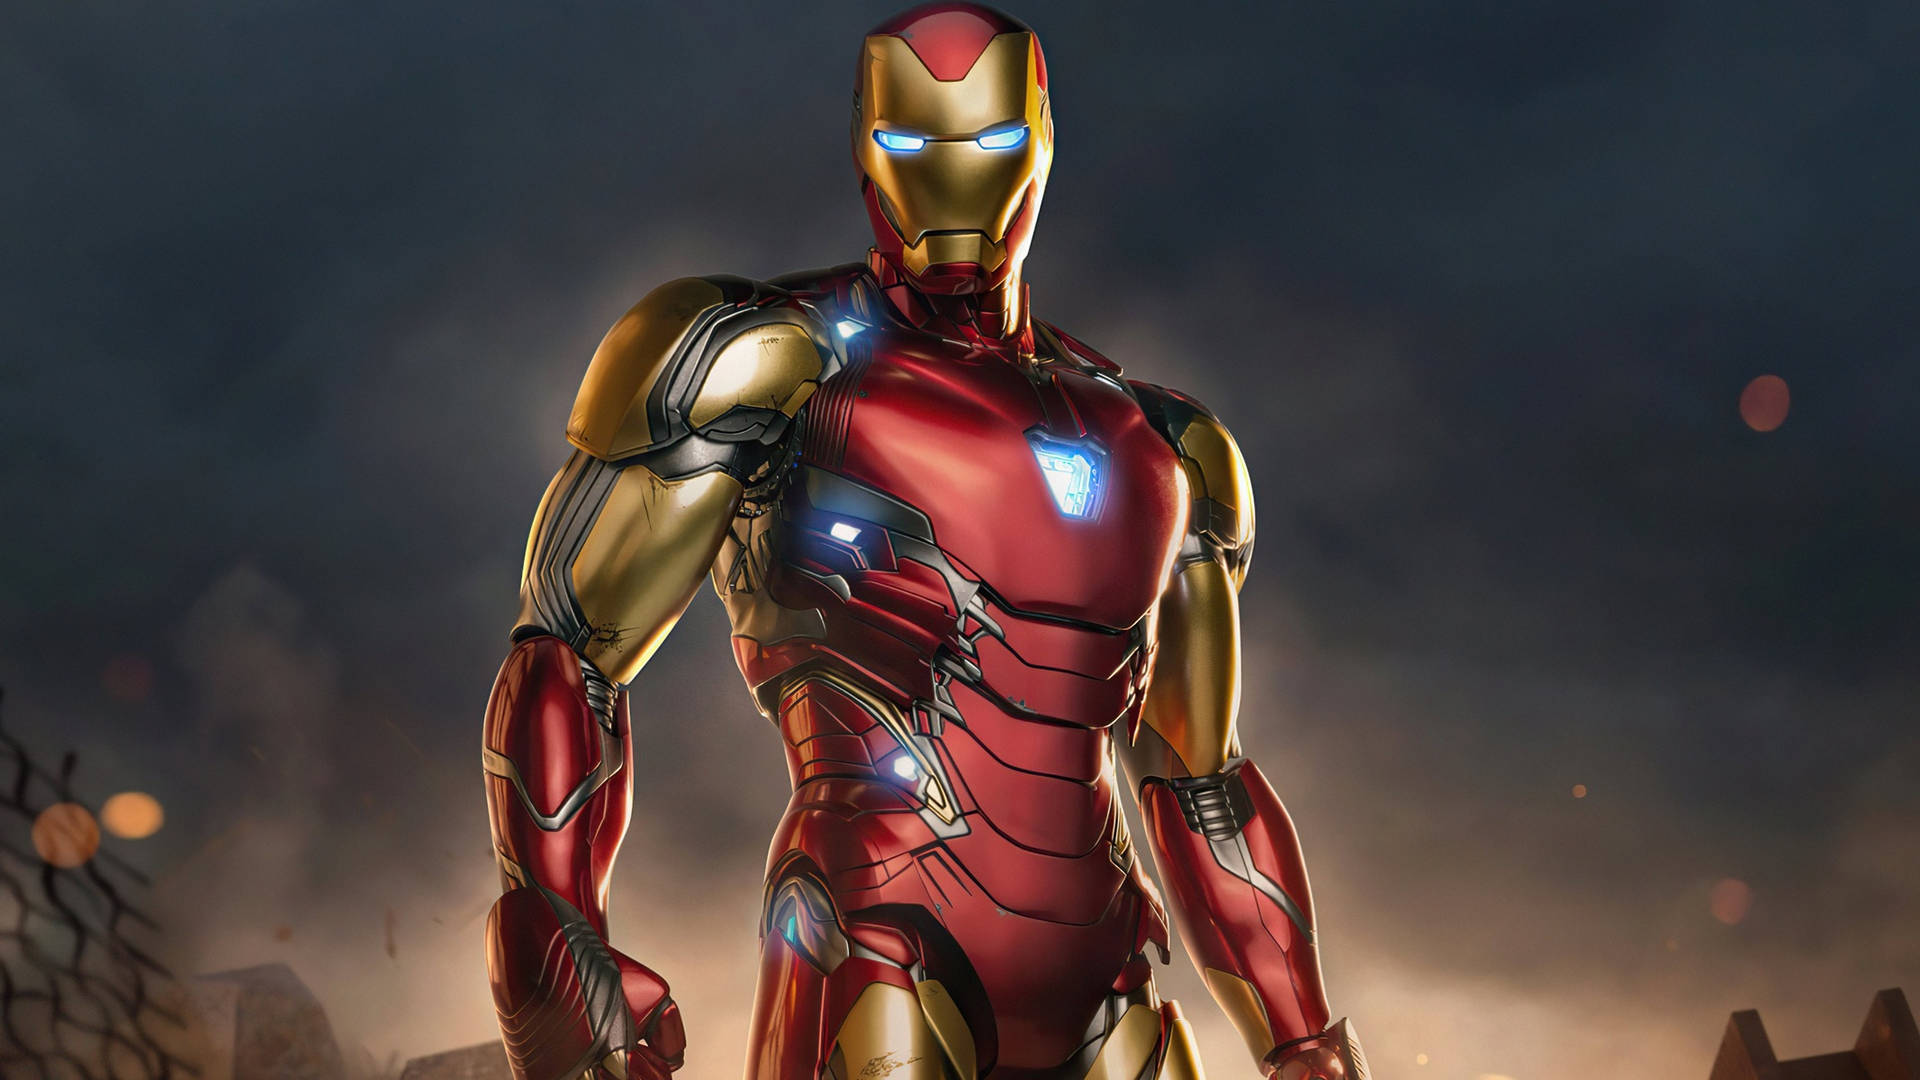 Vingadoresultimato Homem De Ferro Super-herói. Papel de Parede